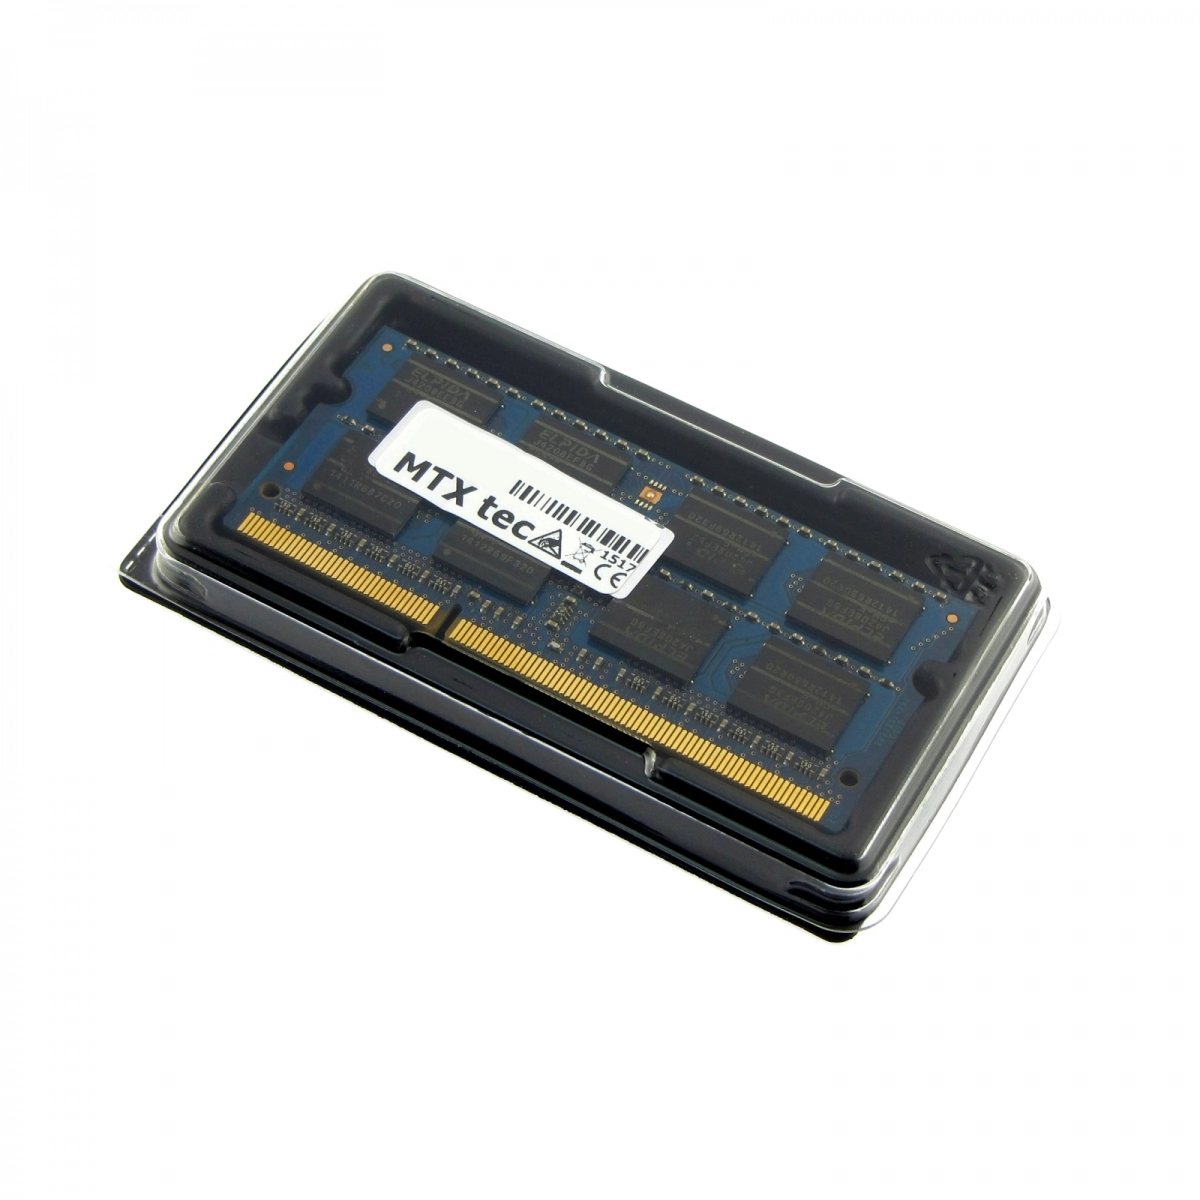 MTXtec Arbeitsspeicher 4 GB RAM für ACER Aspire 1825PTZ